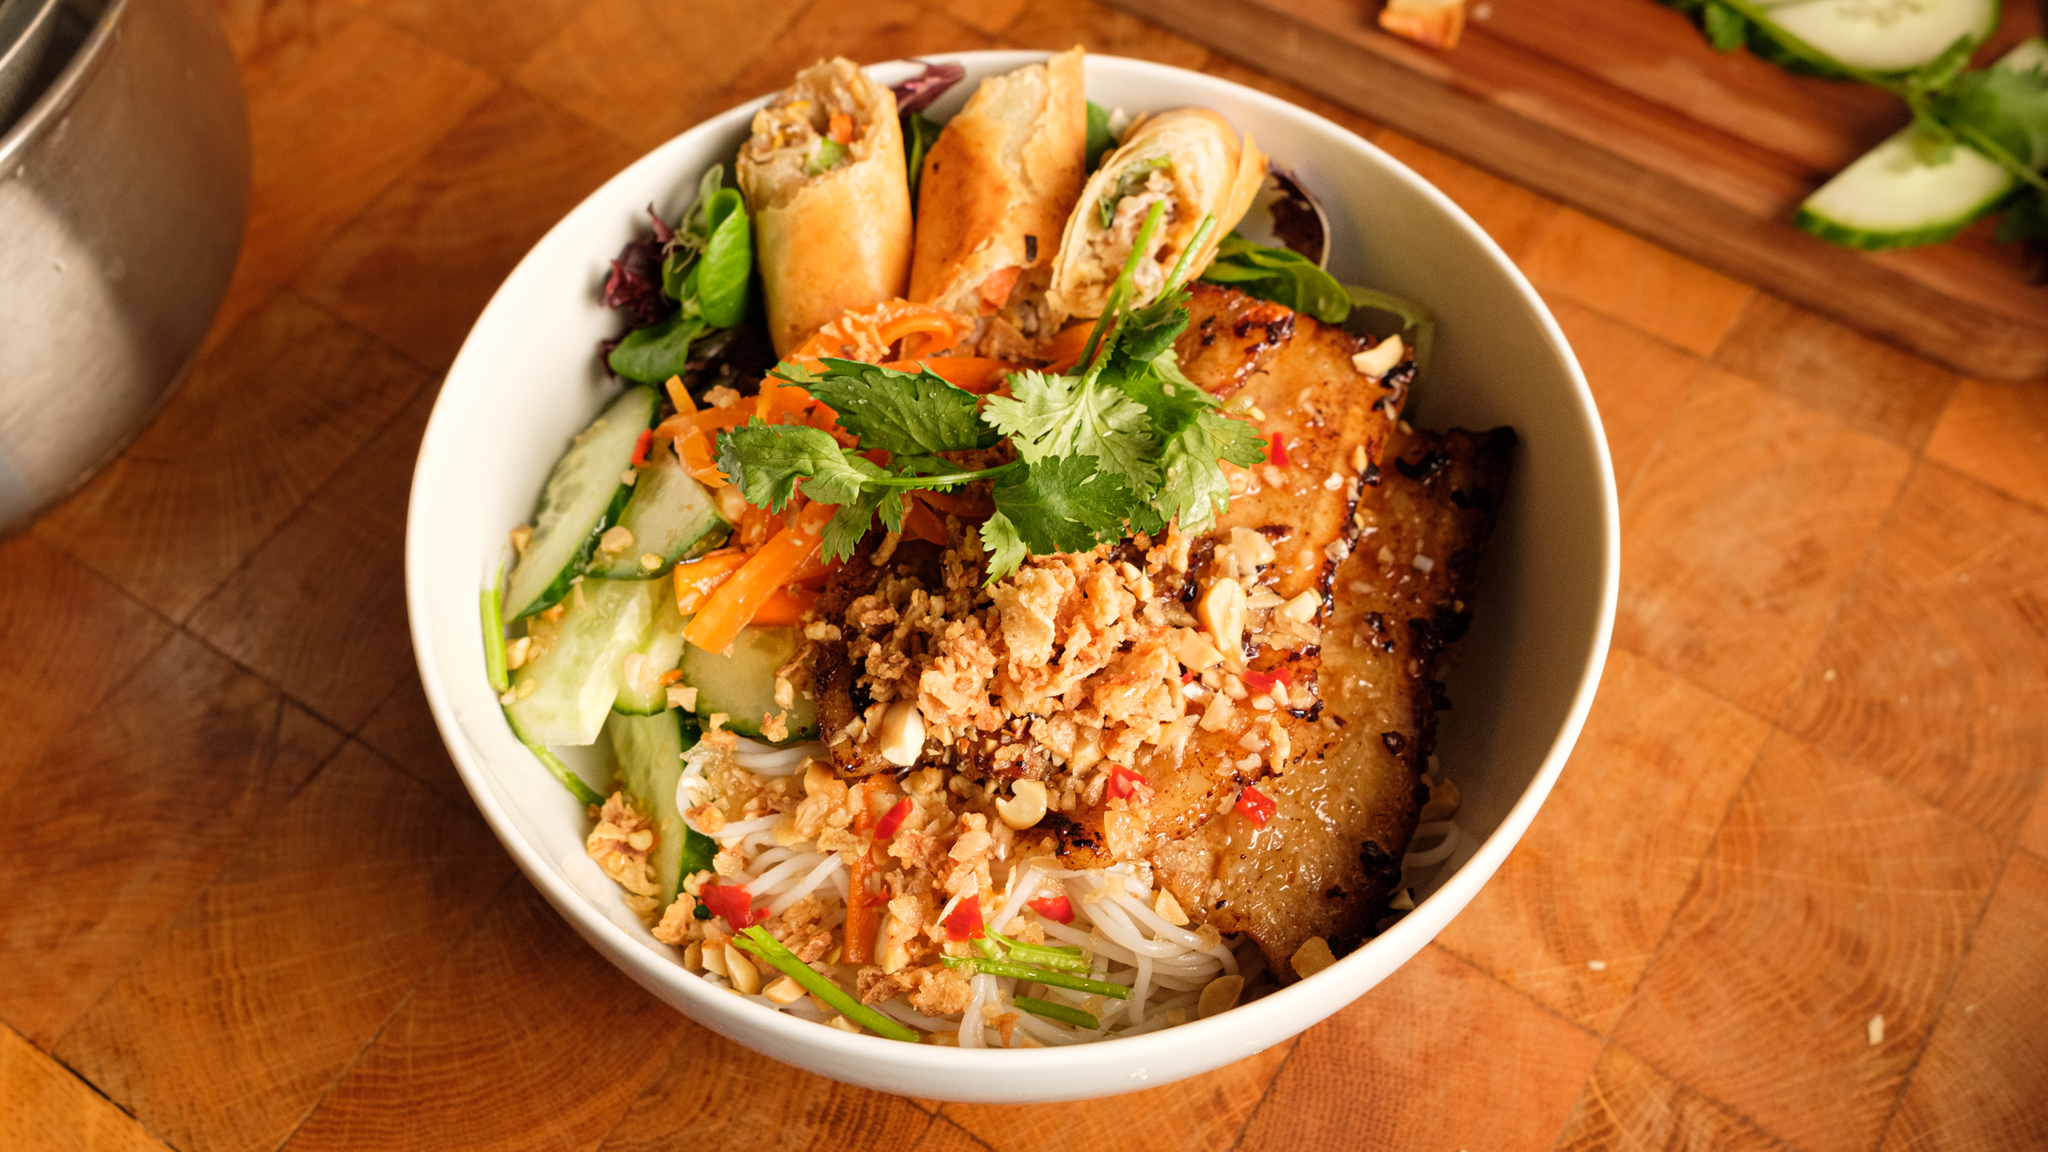 Bun Thit Nuong - Vietnamese Noodle Salad